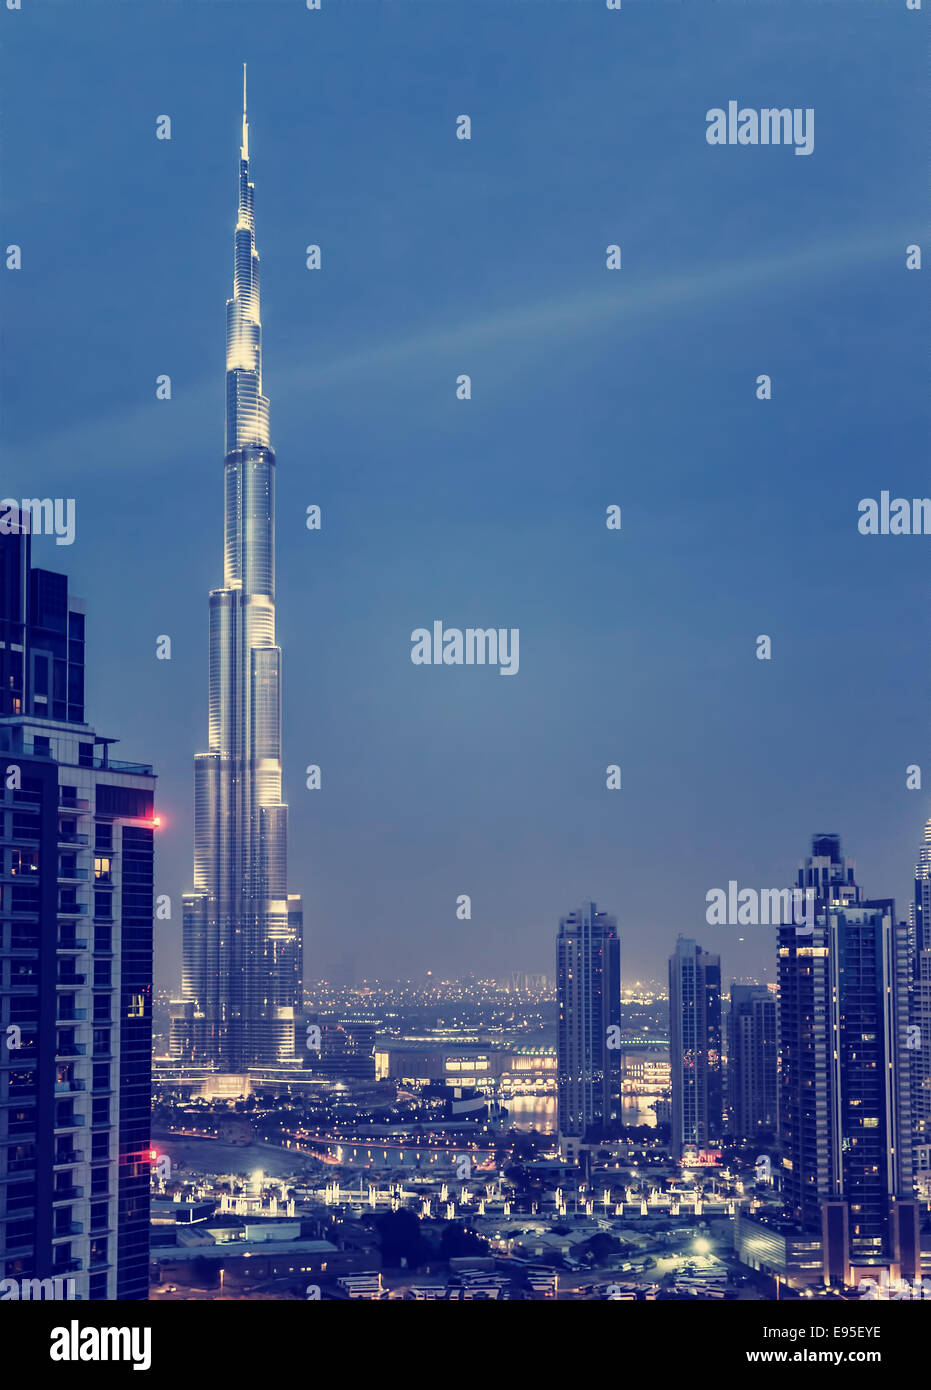 DUBAI, Emirati Arabi Uniti - 28 gennaio: Burj Khalifa, più alte del mondo torre a 828m, che si trova presso il centro cittadino, il Burj Khalifa di notte Foto Stock